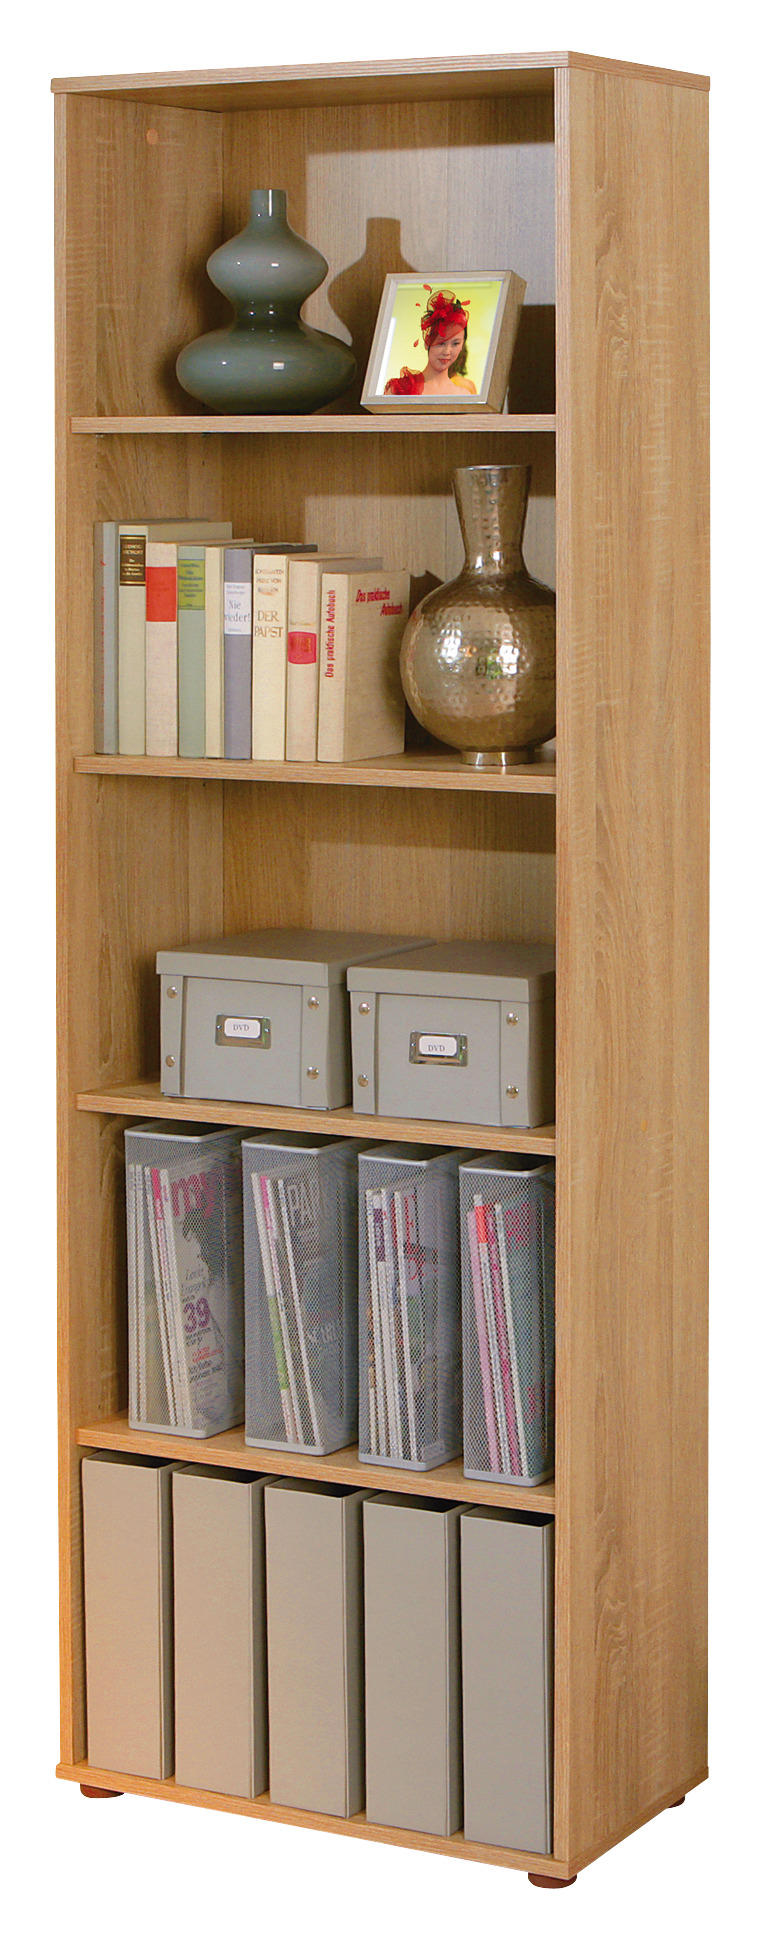 Bücherregal 70 cm hoch - Die Auswahl unter der Vielzahl an analysierten Bücherregal 70 cm hoch!